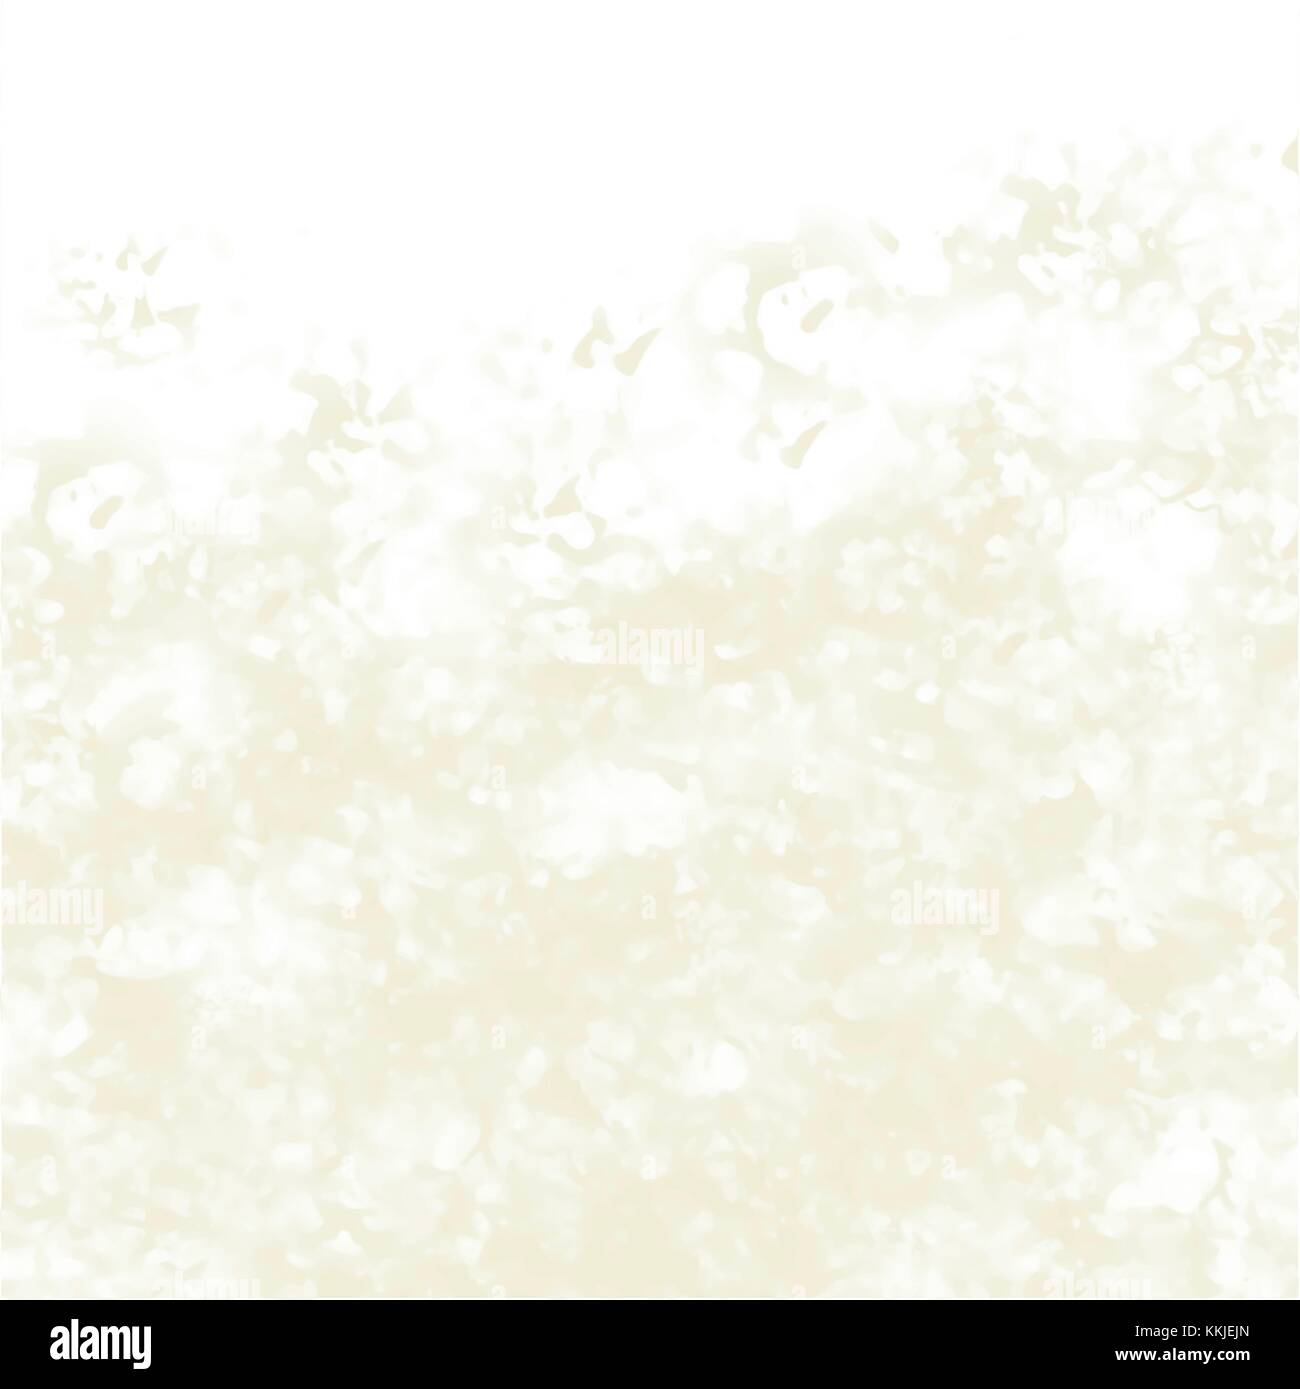 Fawn giallo torbido disegno ad acquerello con breve visibili i tratti di pennello su sfondo bianco, illustrazione vettoriale Illustrazione Vettoriale